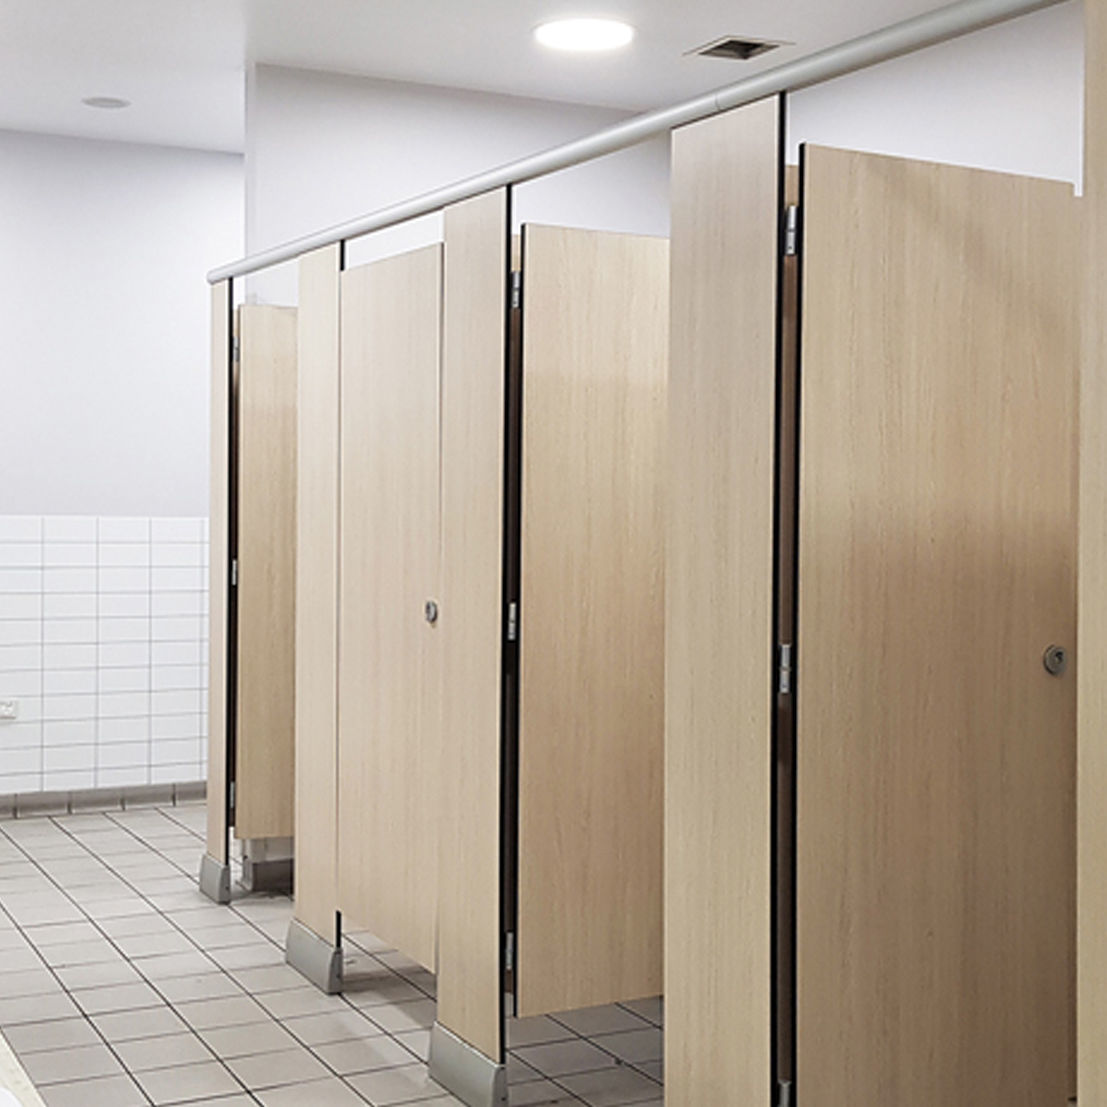 ผนังกั้นห้องน้ำสำเร็จรูป ความหนา 10 mm HPL CH-8388 (ขาตั้งอลูมิเนียม) คุณภาพดี เหมาะกับงานพาติชั่นกั้นห้องน้ำ โดยเฉพาะ เช่น ห้องน้ำโรงเรียน ห้องน้ำออฟฟิศ ห้องน้ำสาธารณะ